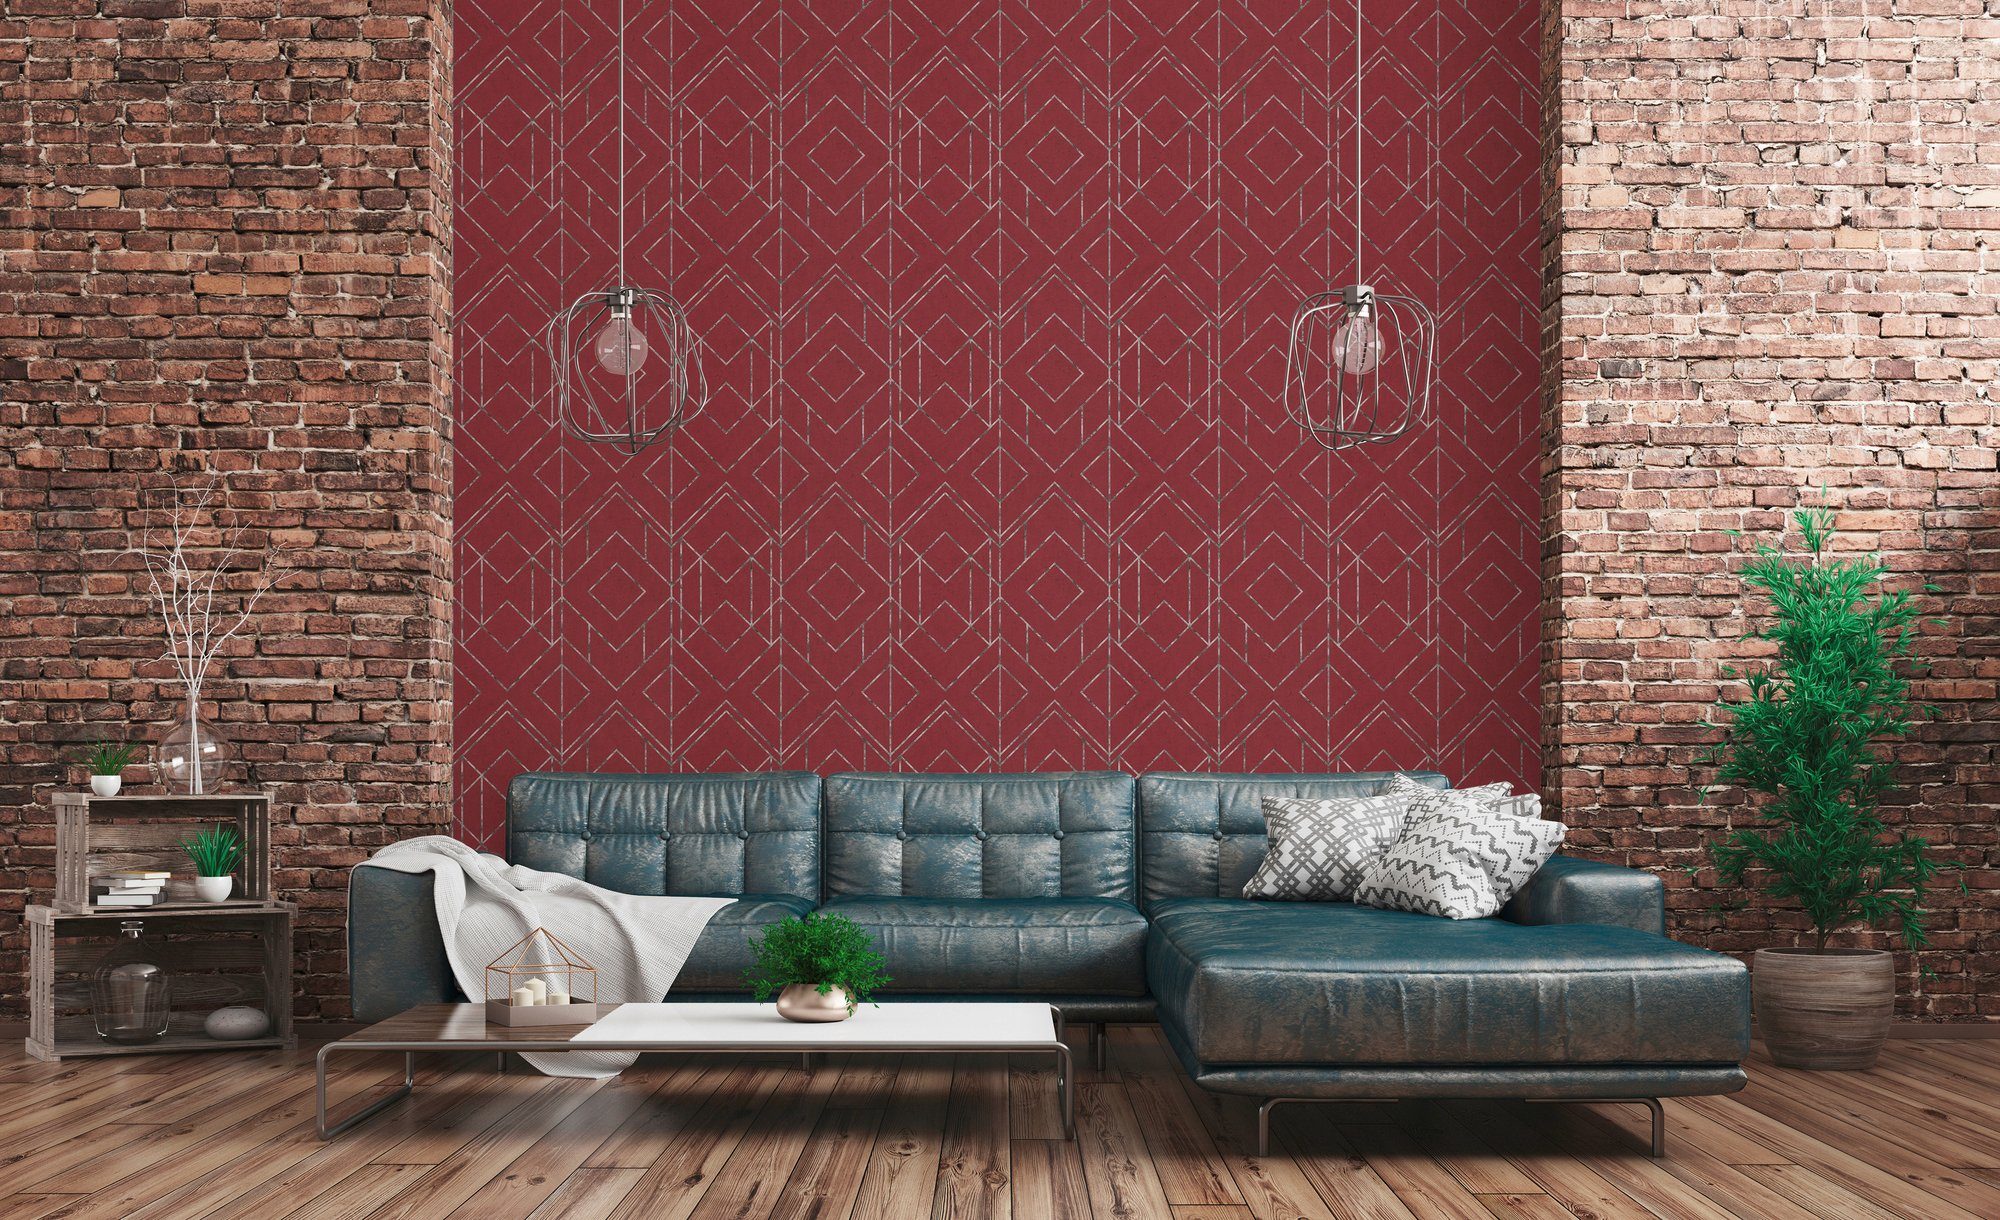 Geometrisch Vliestapete Tapete Metropolitan walls geometrisch, New grafisch, rot/grau/weiß Stories, living Ava York, Orientalische